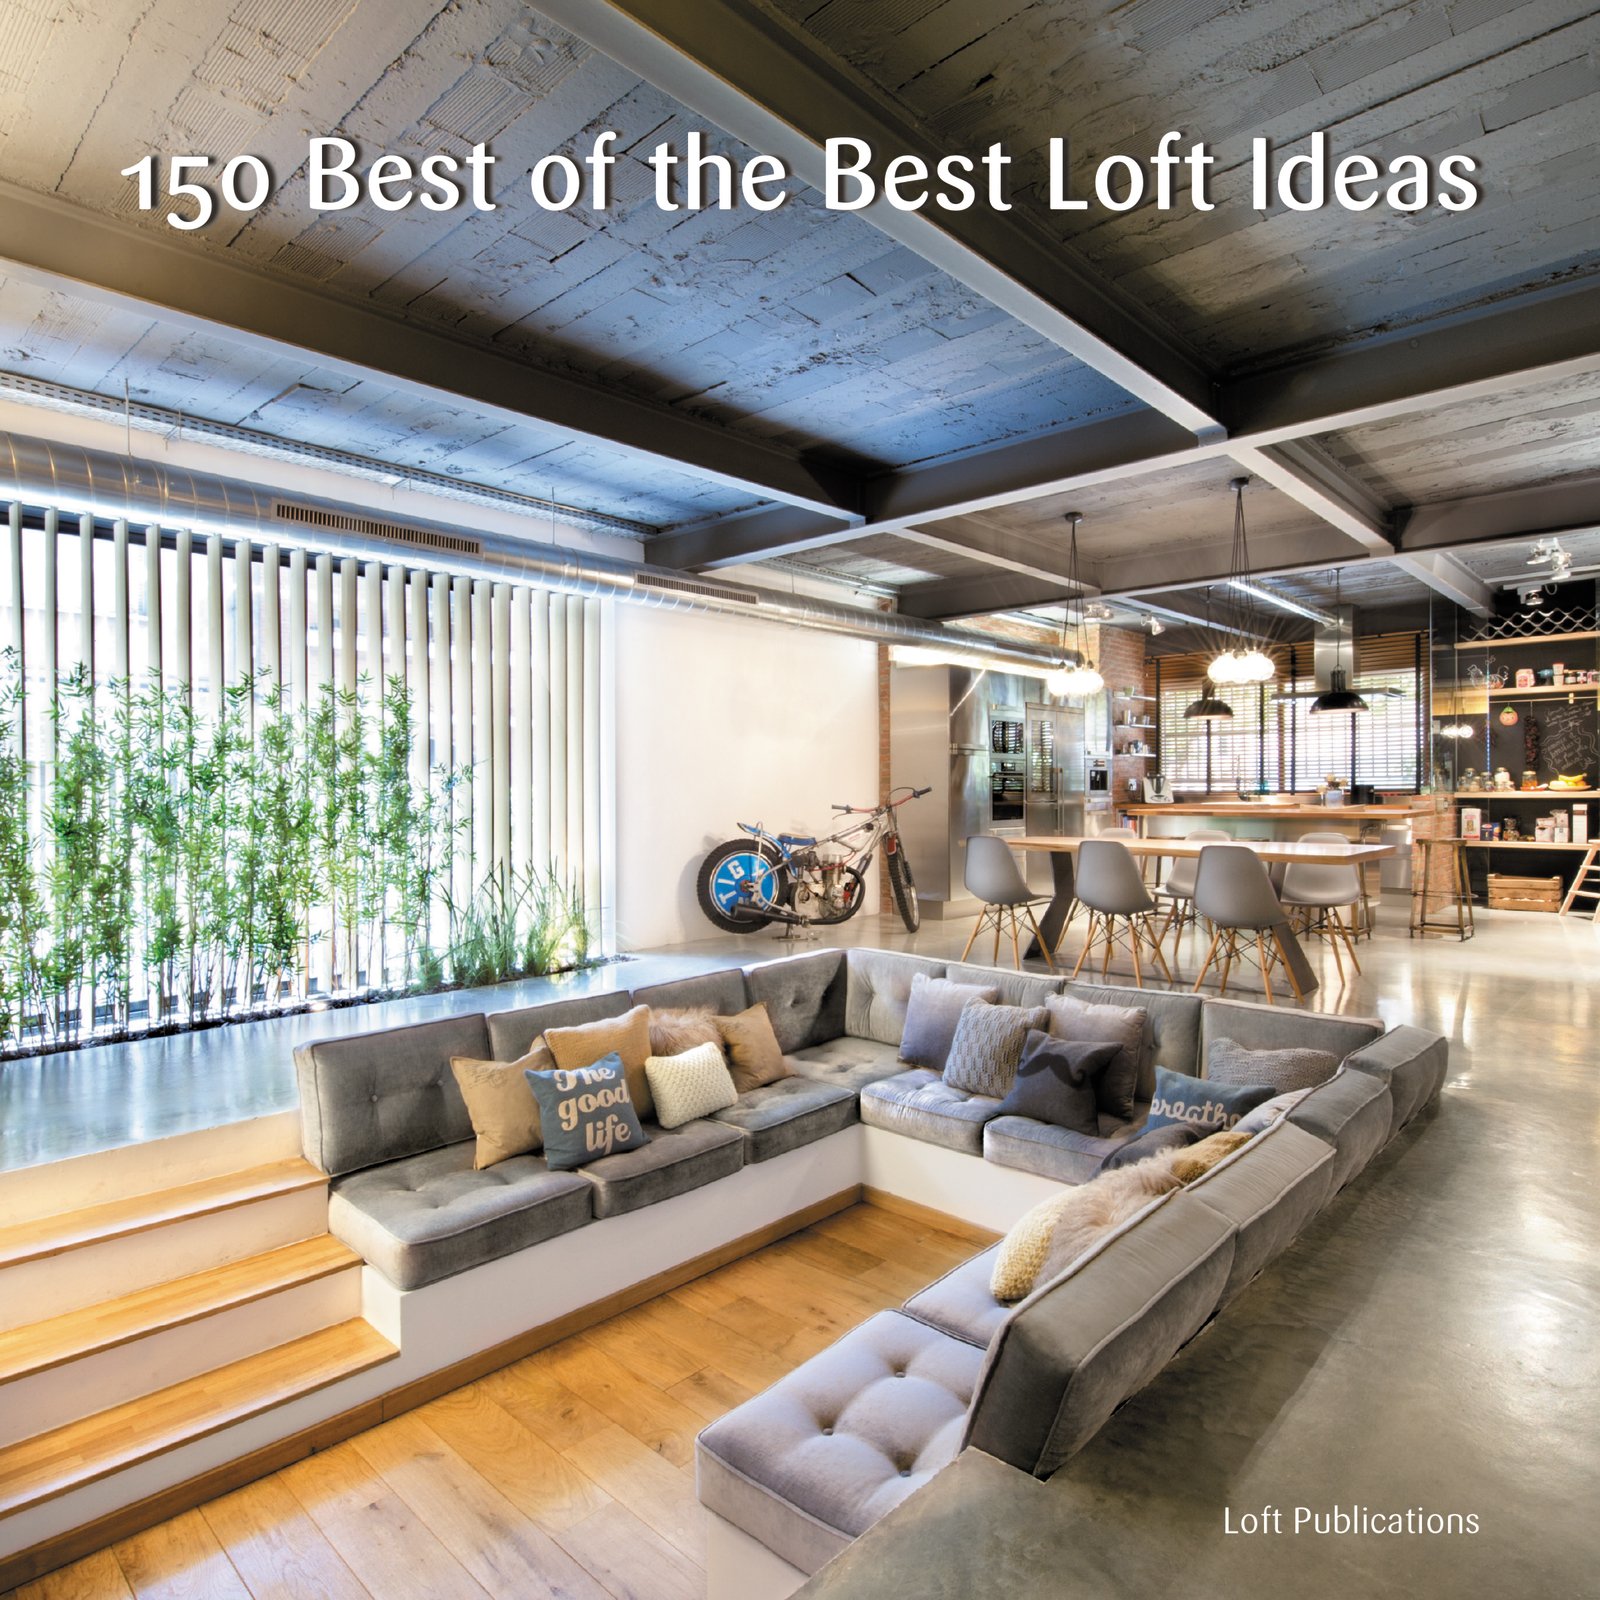 150 Best of the Best Loft Ideas | Loft Publications Inc.